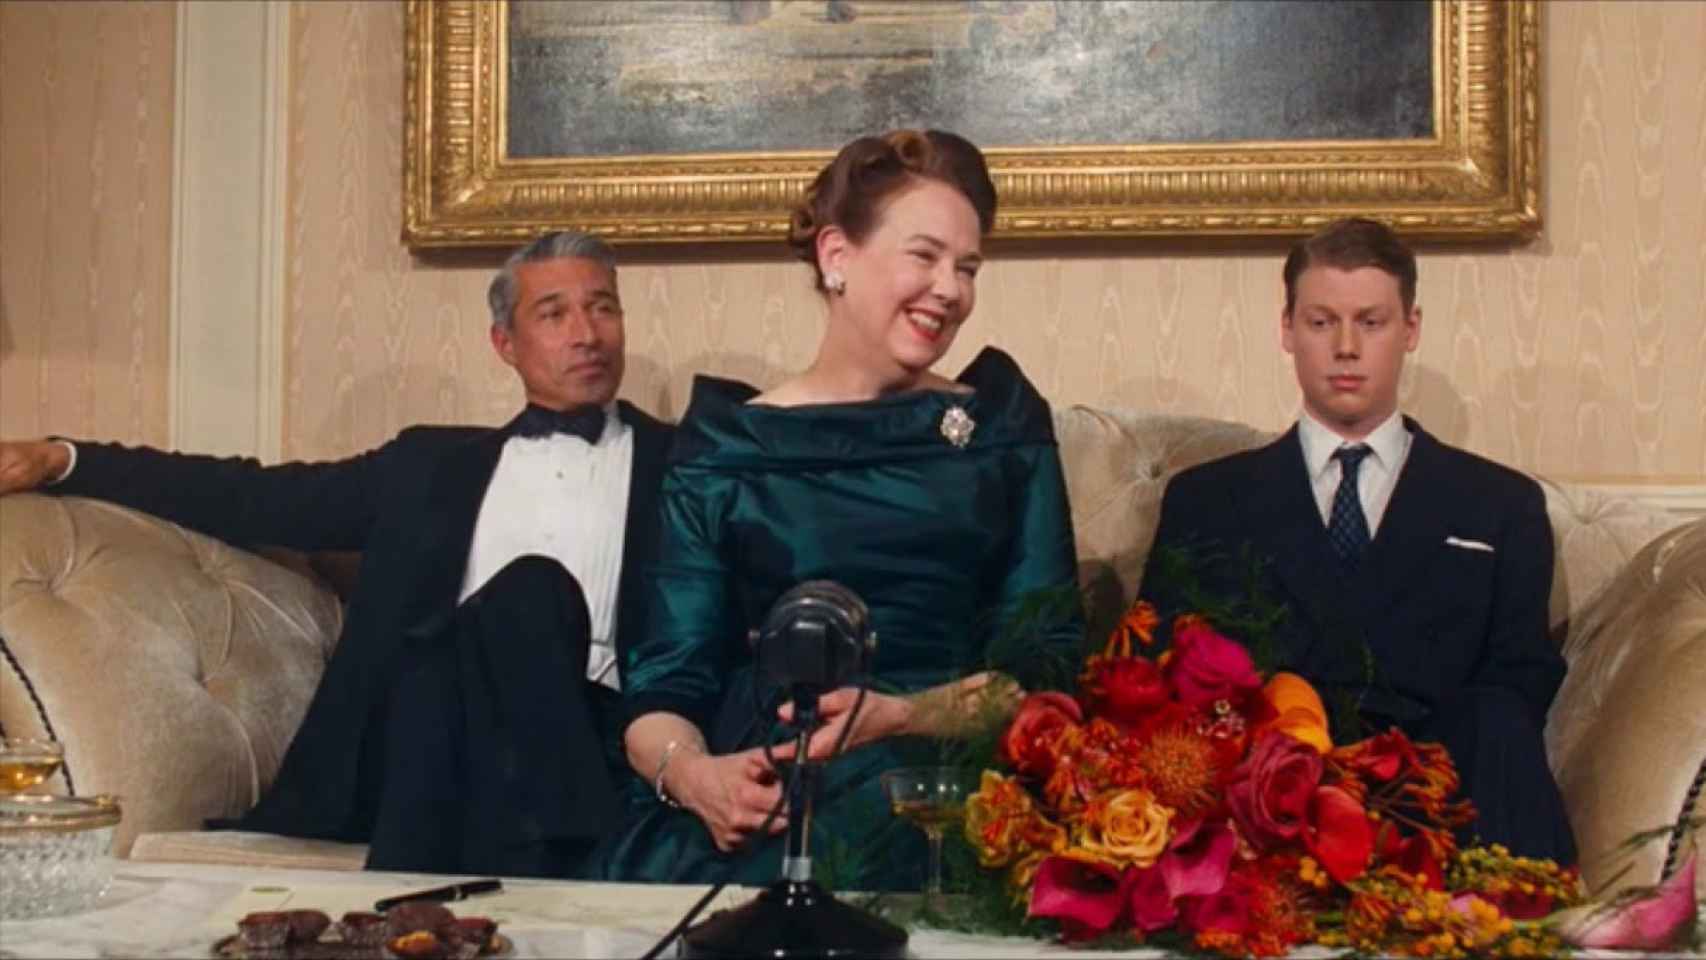 Escena de la película 'The phantom thread' (El hilo invisible) inspirada en la rueda de prensa que dio Barbara Hutton para comunicar su divorcio de Rubirosa.